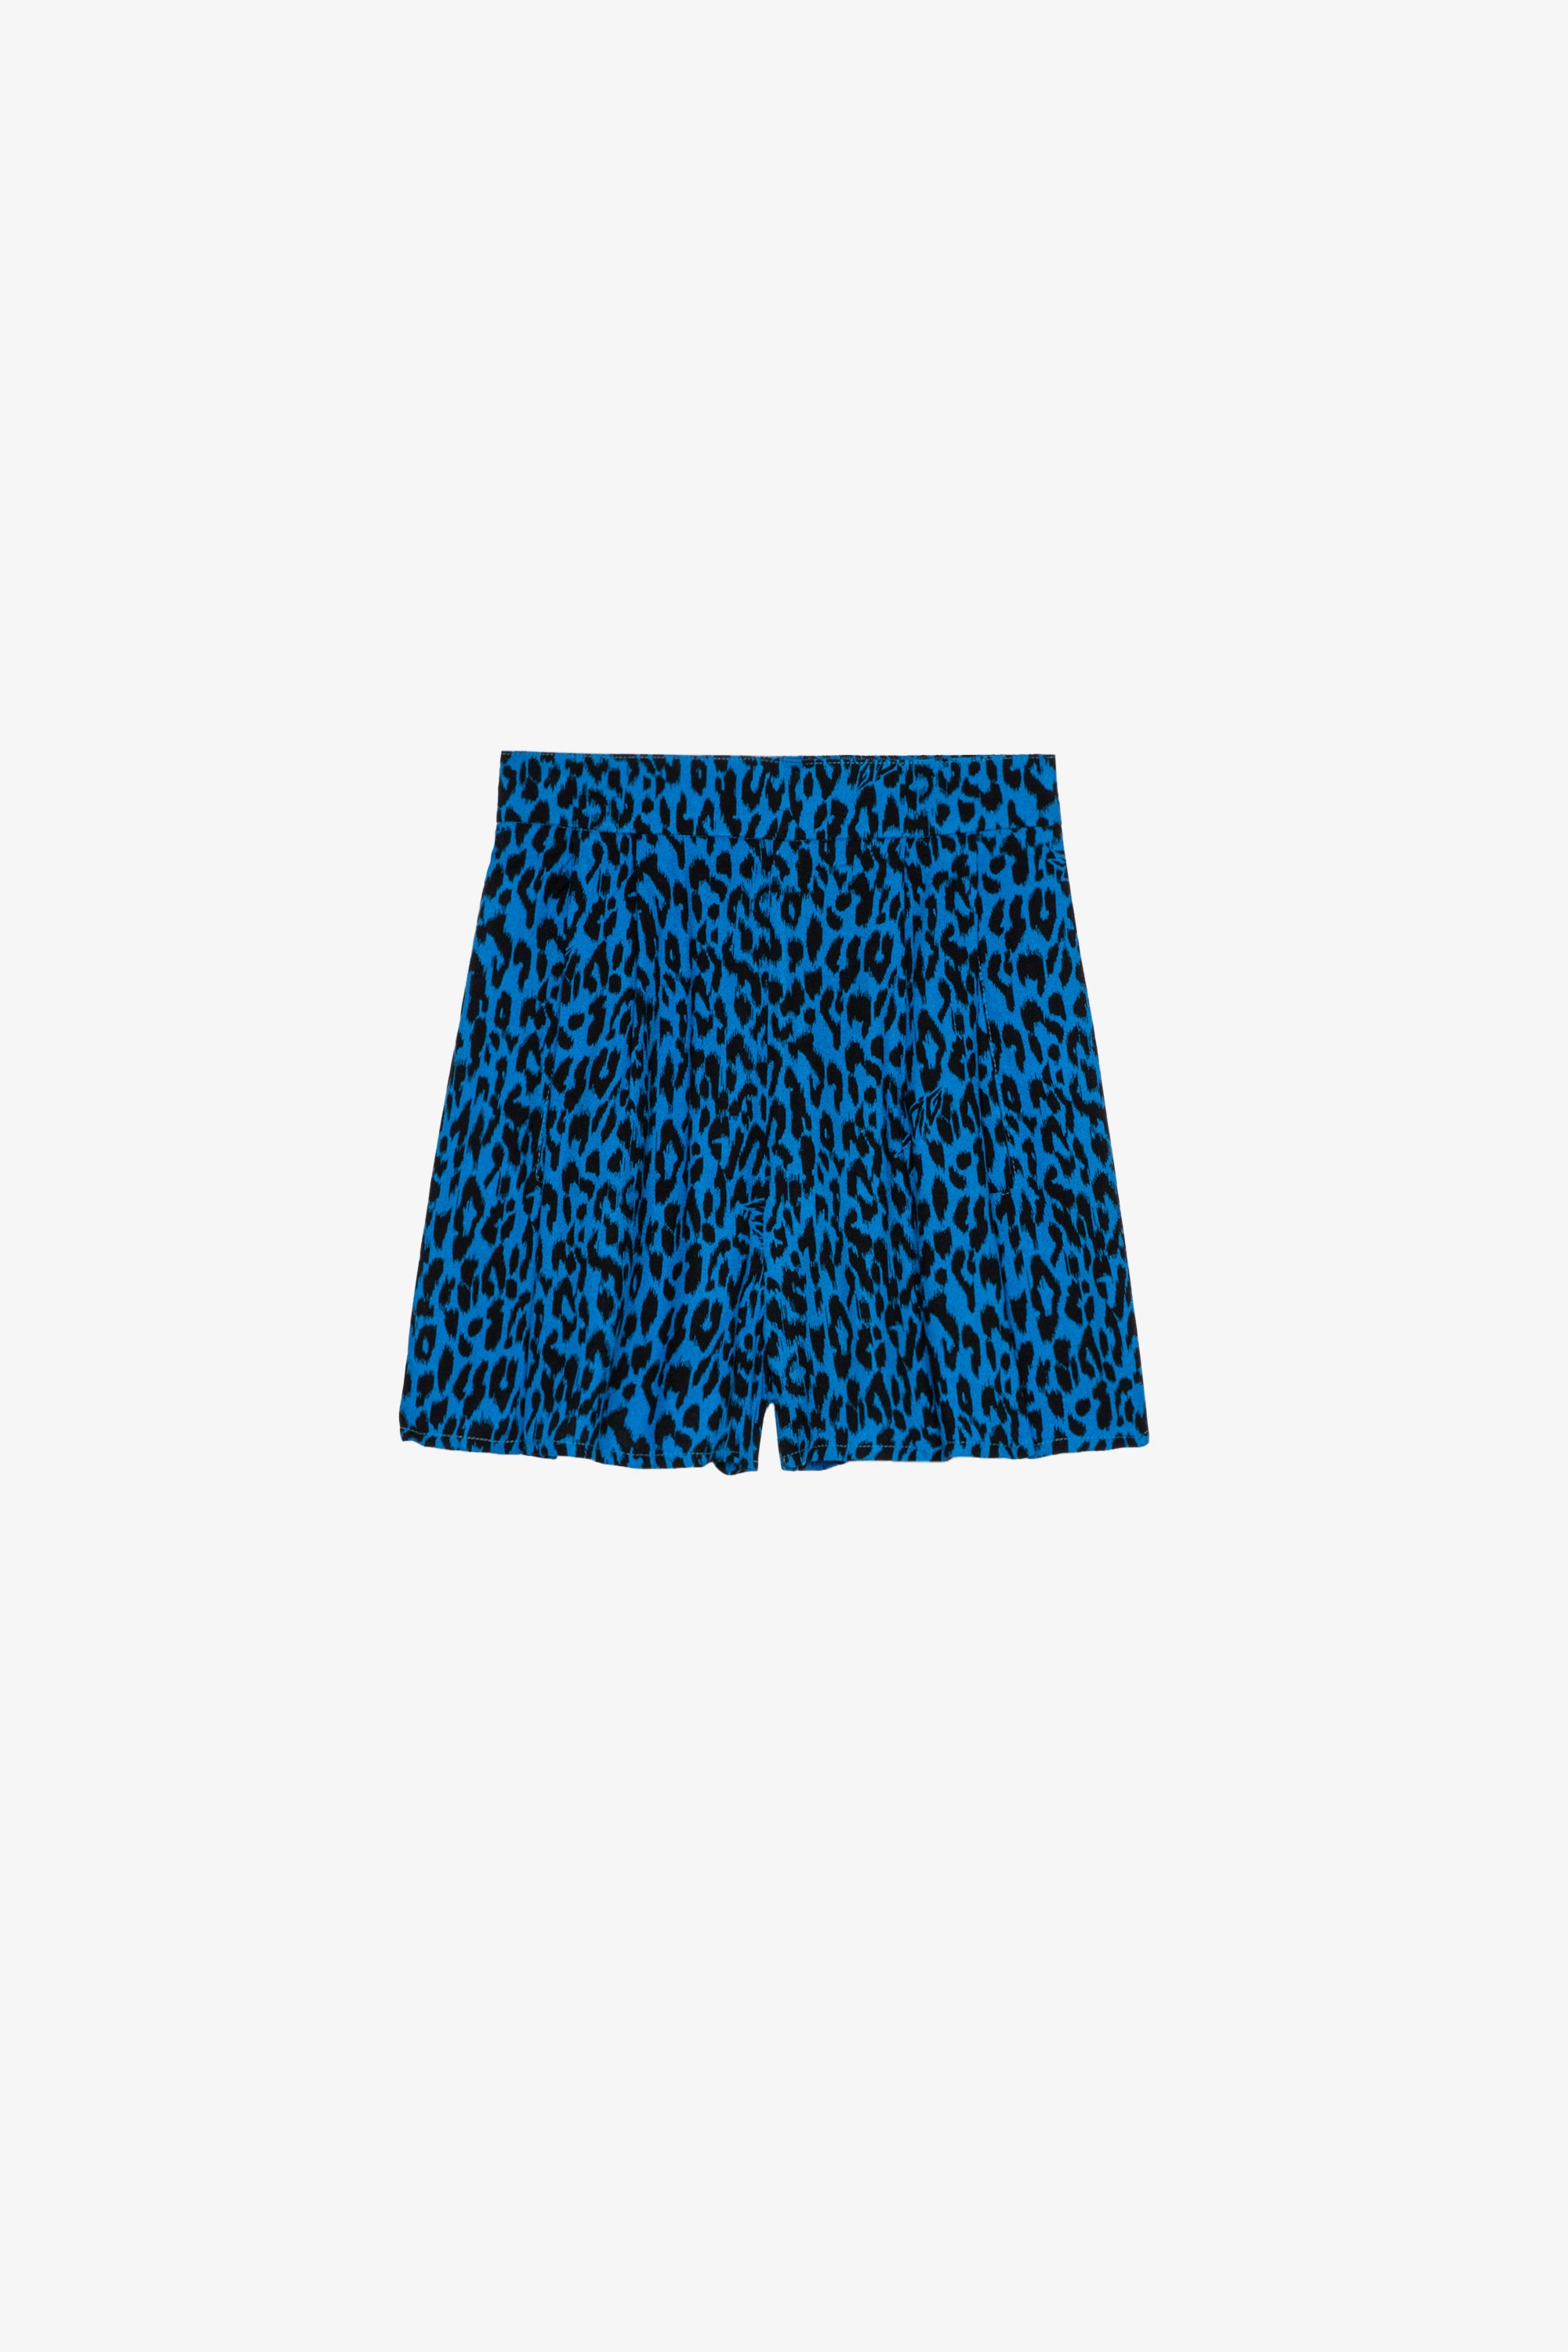 Pantalón corto Nicole Infantil Pantalón corto azul de crepé infantil con estampado de leopardo